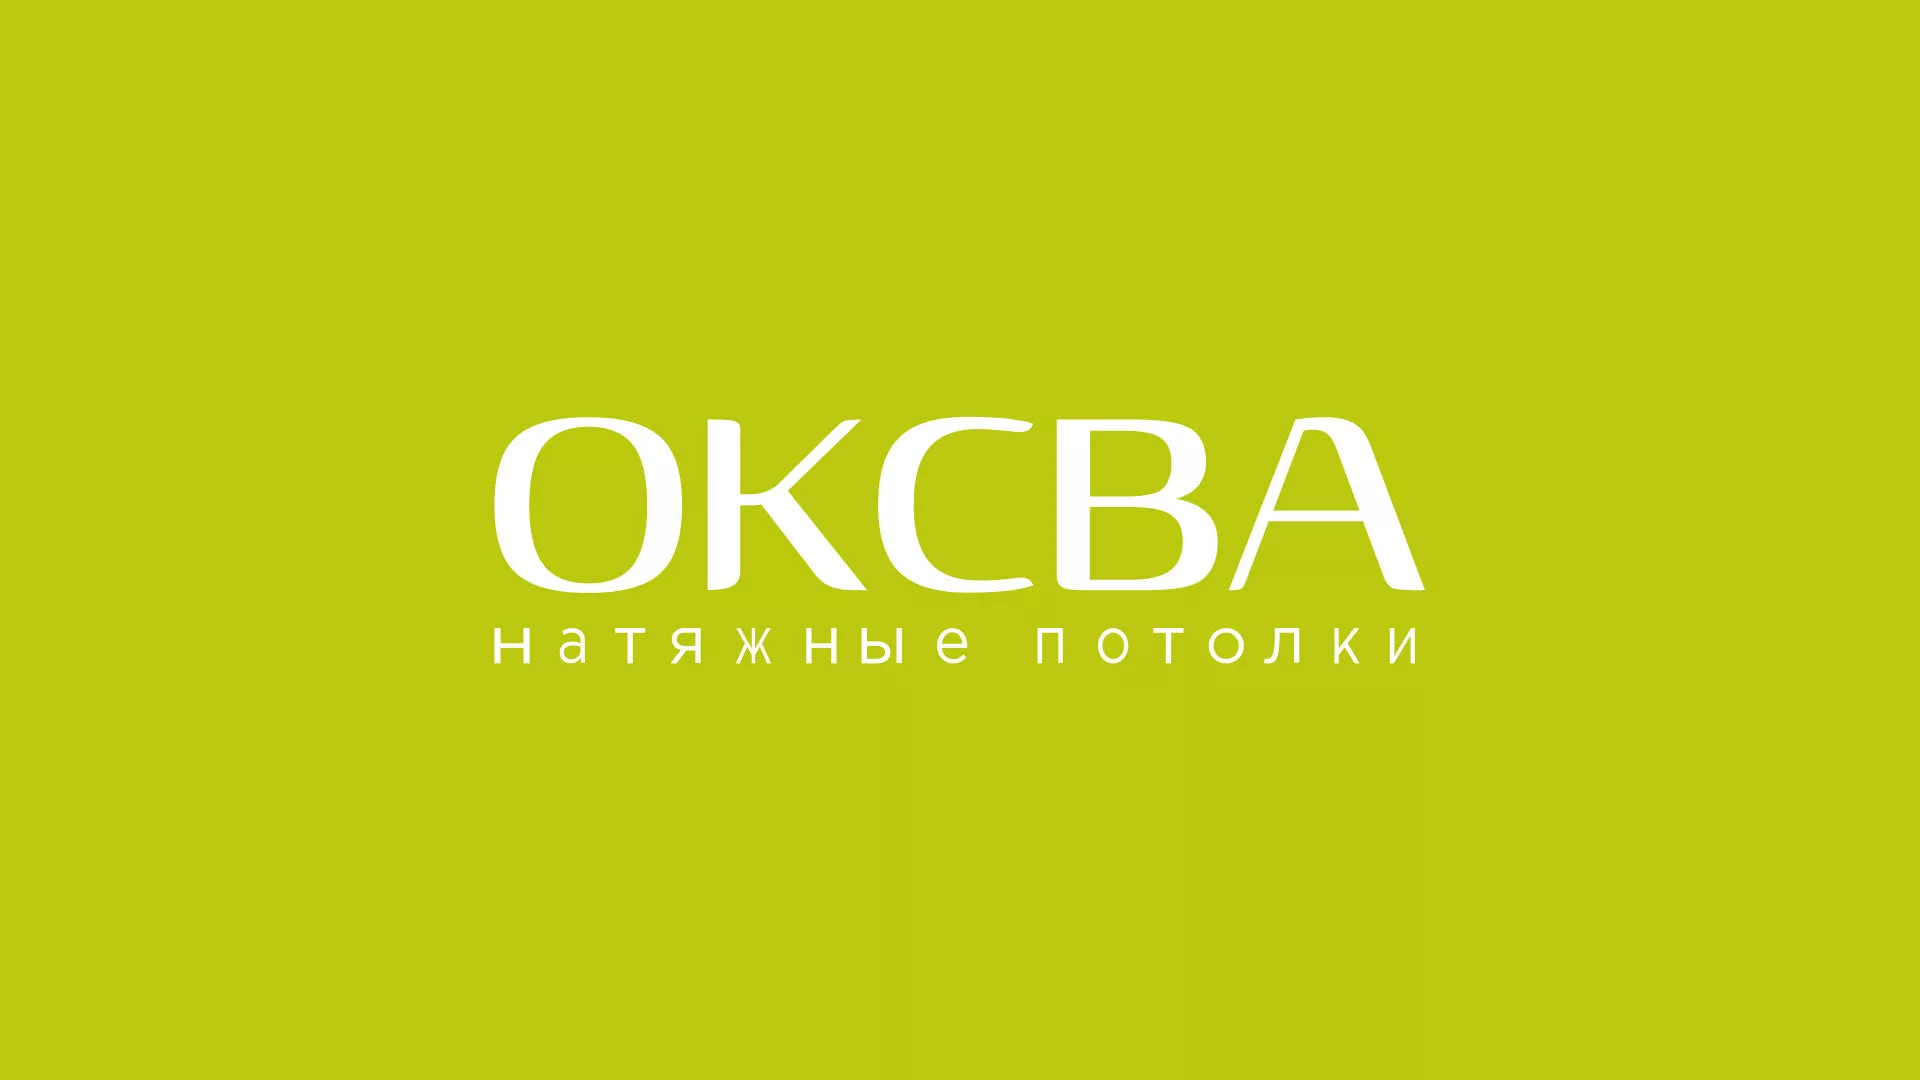 Создание сайта по продаже натяжных потолков для компании «ОКСВА» в Хвалынске